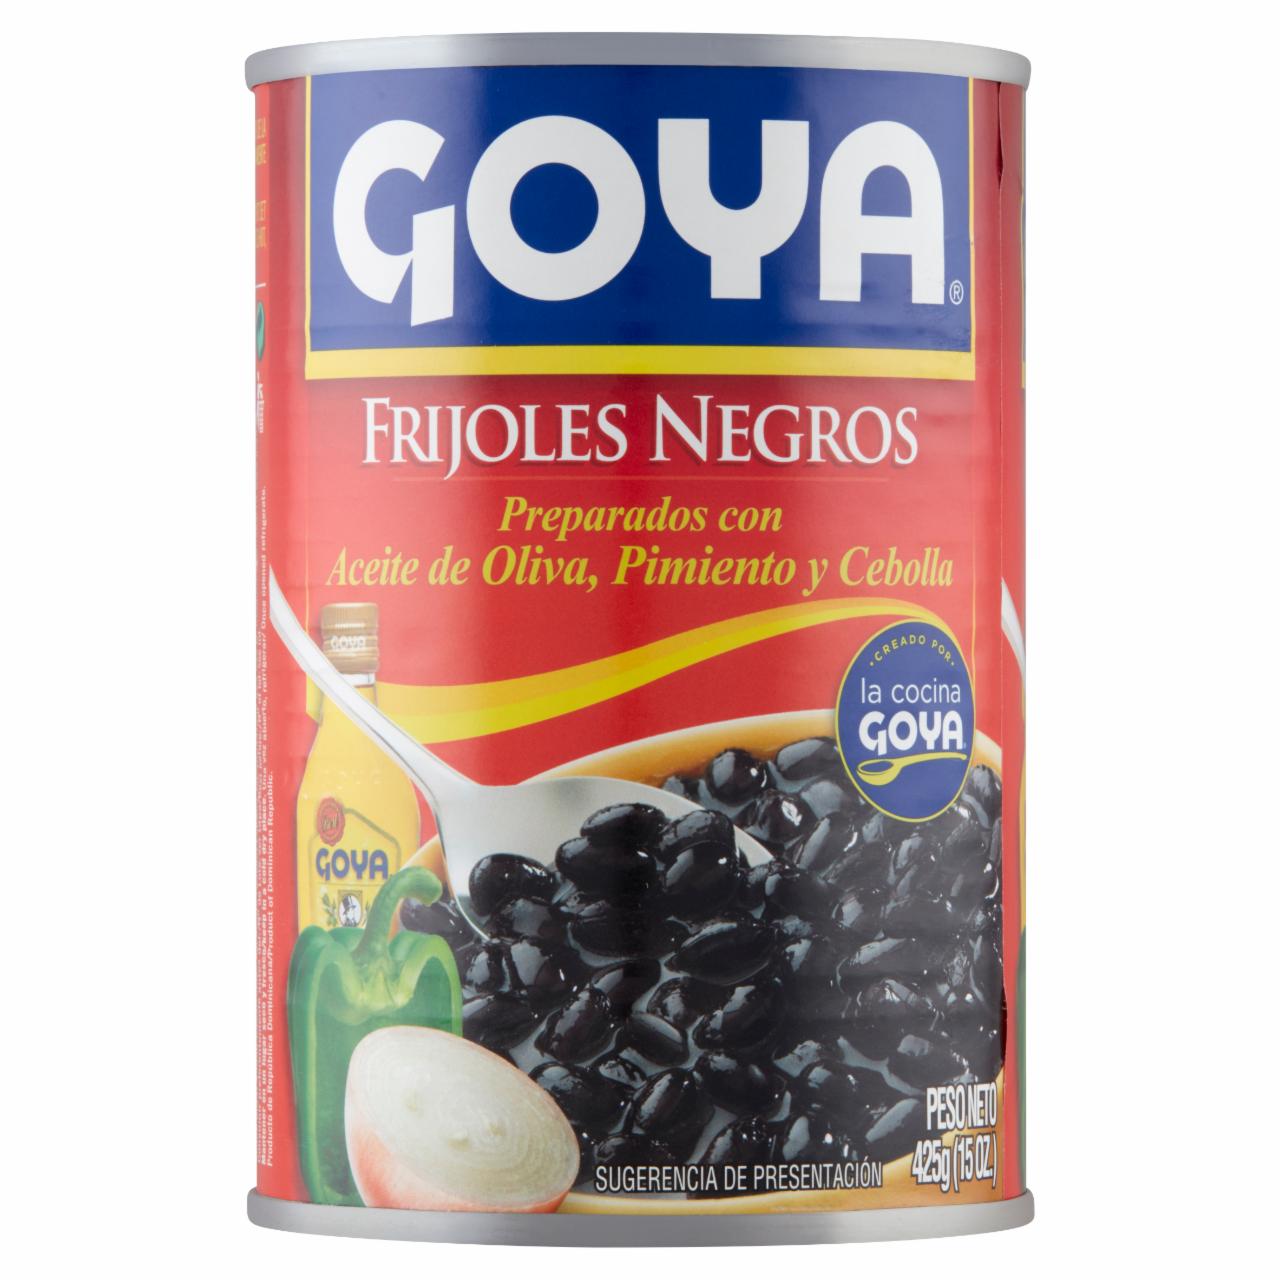 Képek - Goya fekete bab olívaolajjal, paprikával és hagymával elkészítve 425 g